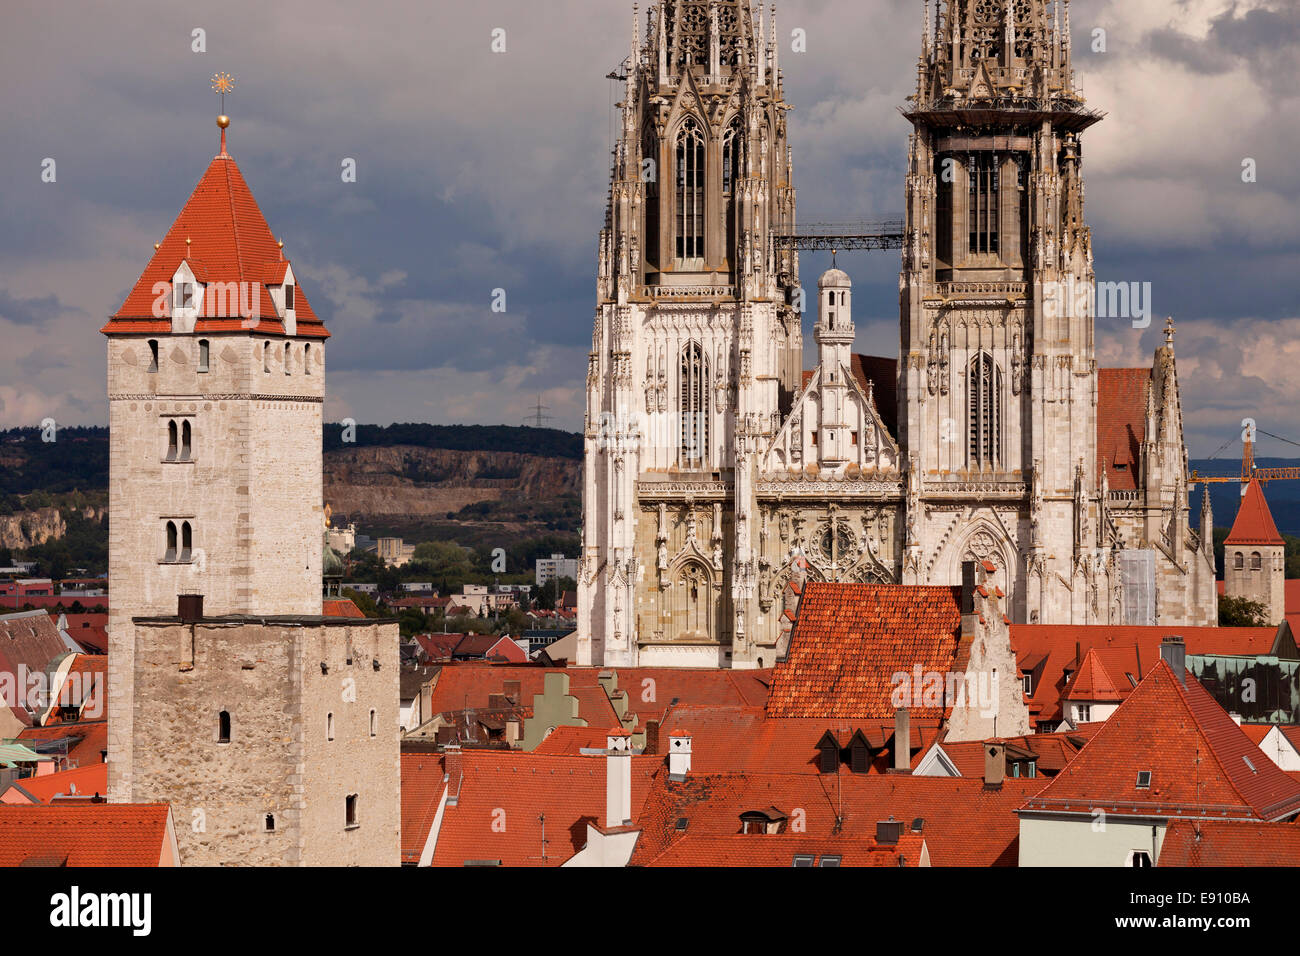 La cathédrale de Regensburg et Golden Tower à Regensburg, Bavière, Allemagne, Europe Banque D'Images